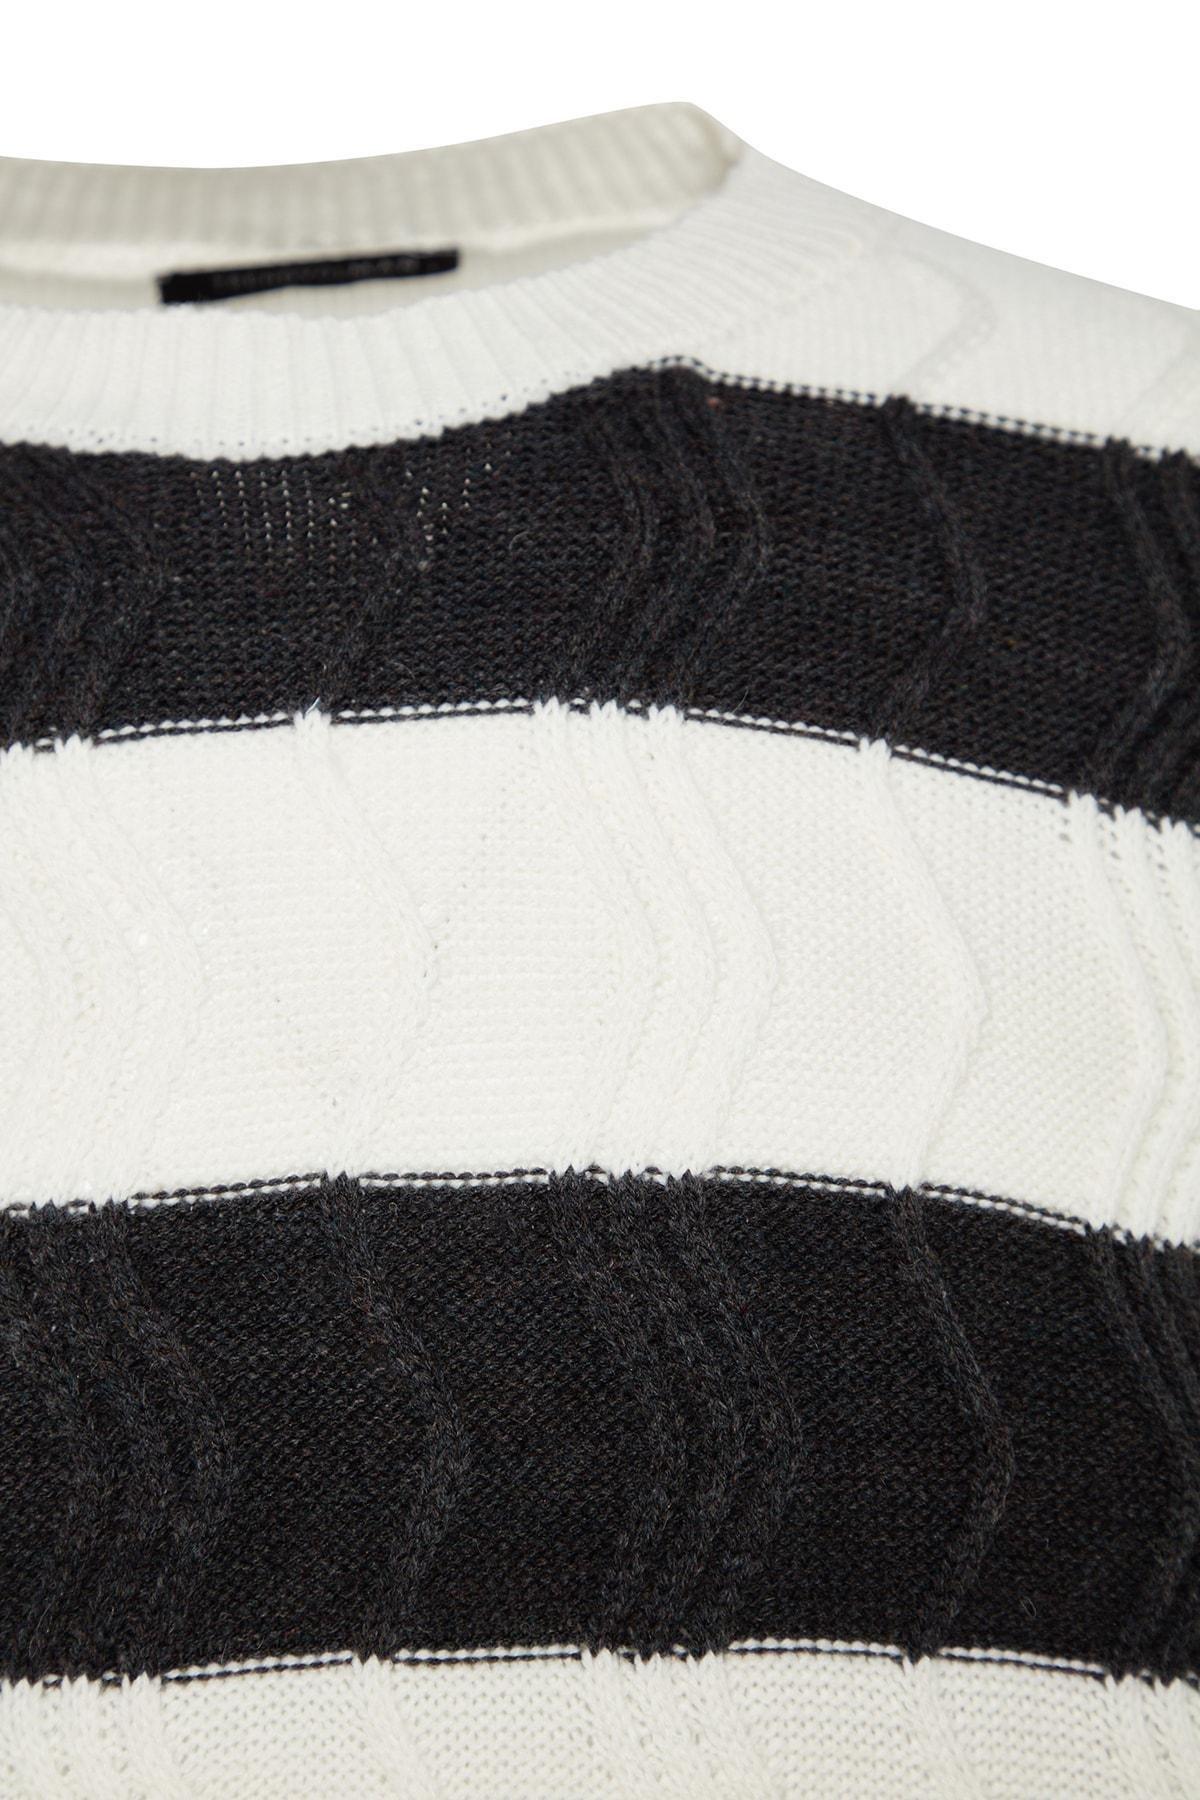 Trendyol - Cream Oversize Striped Knitwear Sweater